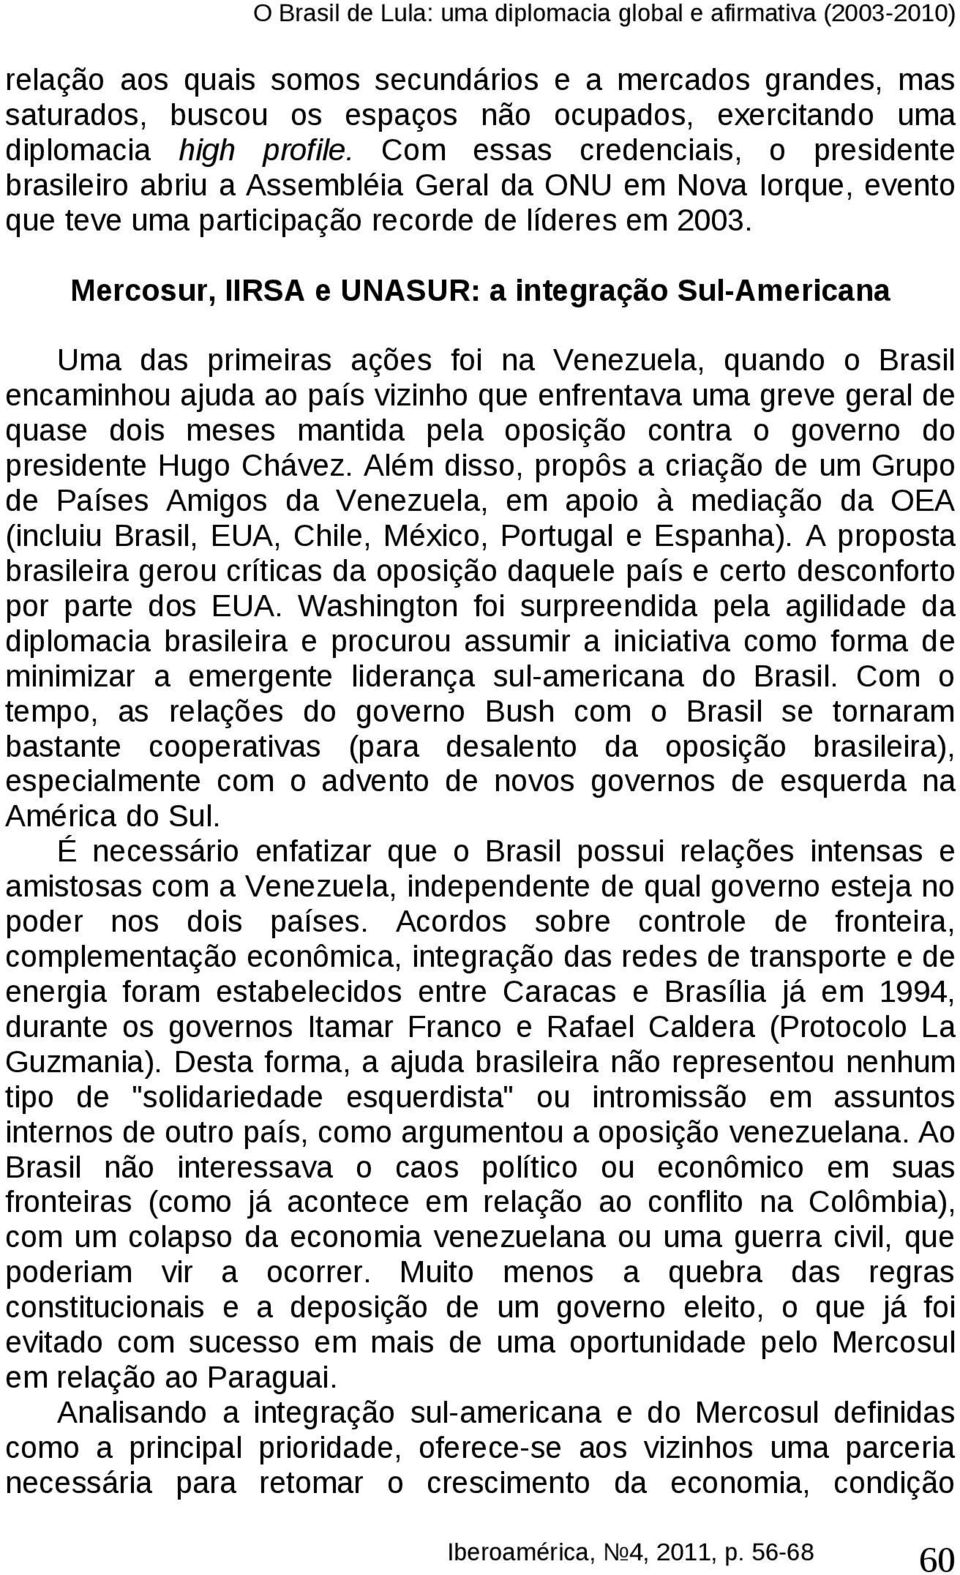 Mercosur, IIRSA e UNASUR: a integração Sul-Americana Uma das primeiras ações foi na Venezuela, quando o Brasil encaminhou ajuda ao país vizinho que enfrentava uma greve geral de quase dois meses